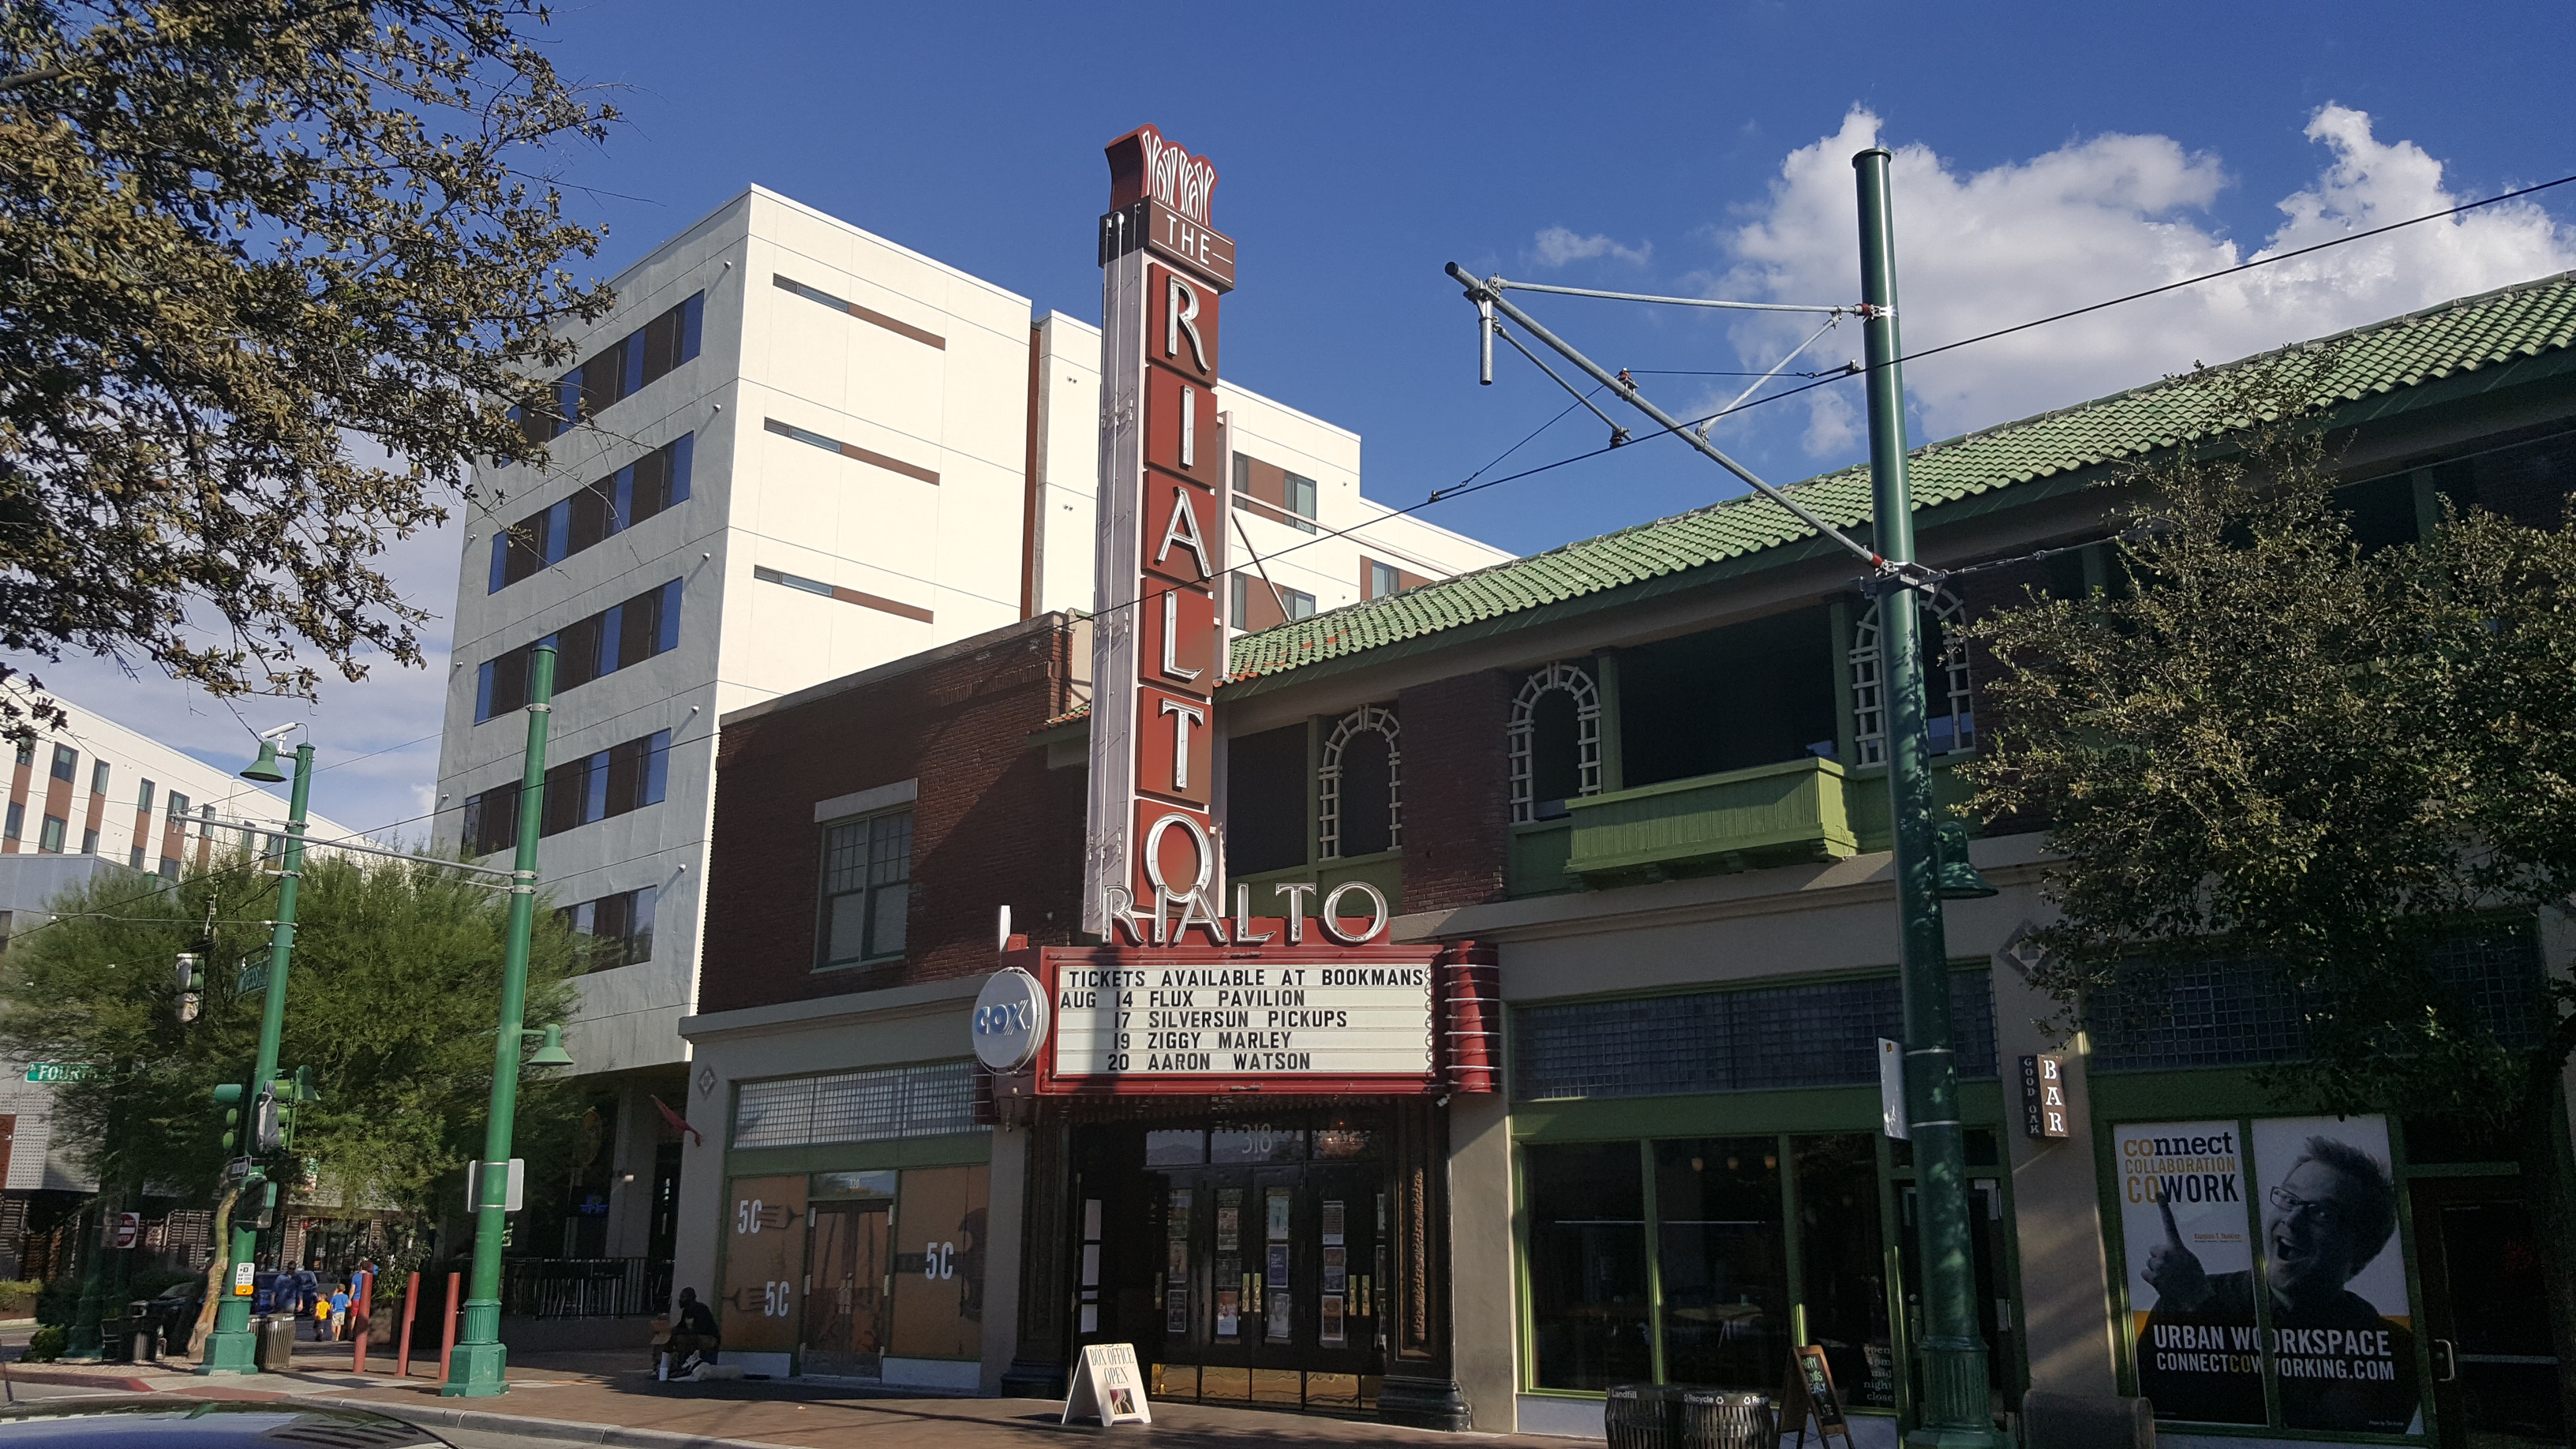 The Rialto Theatre in Tucson